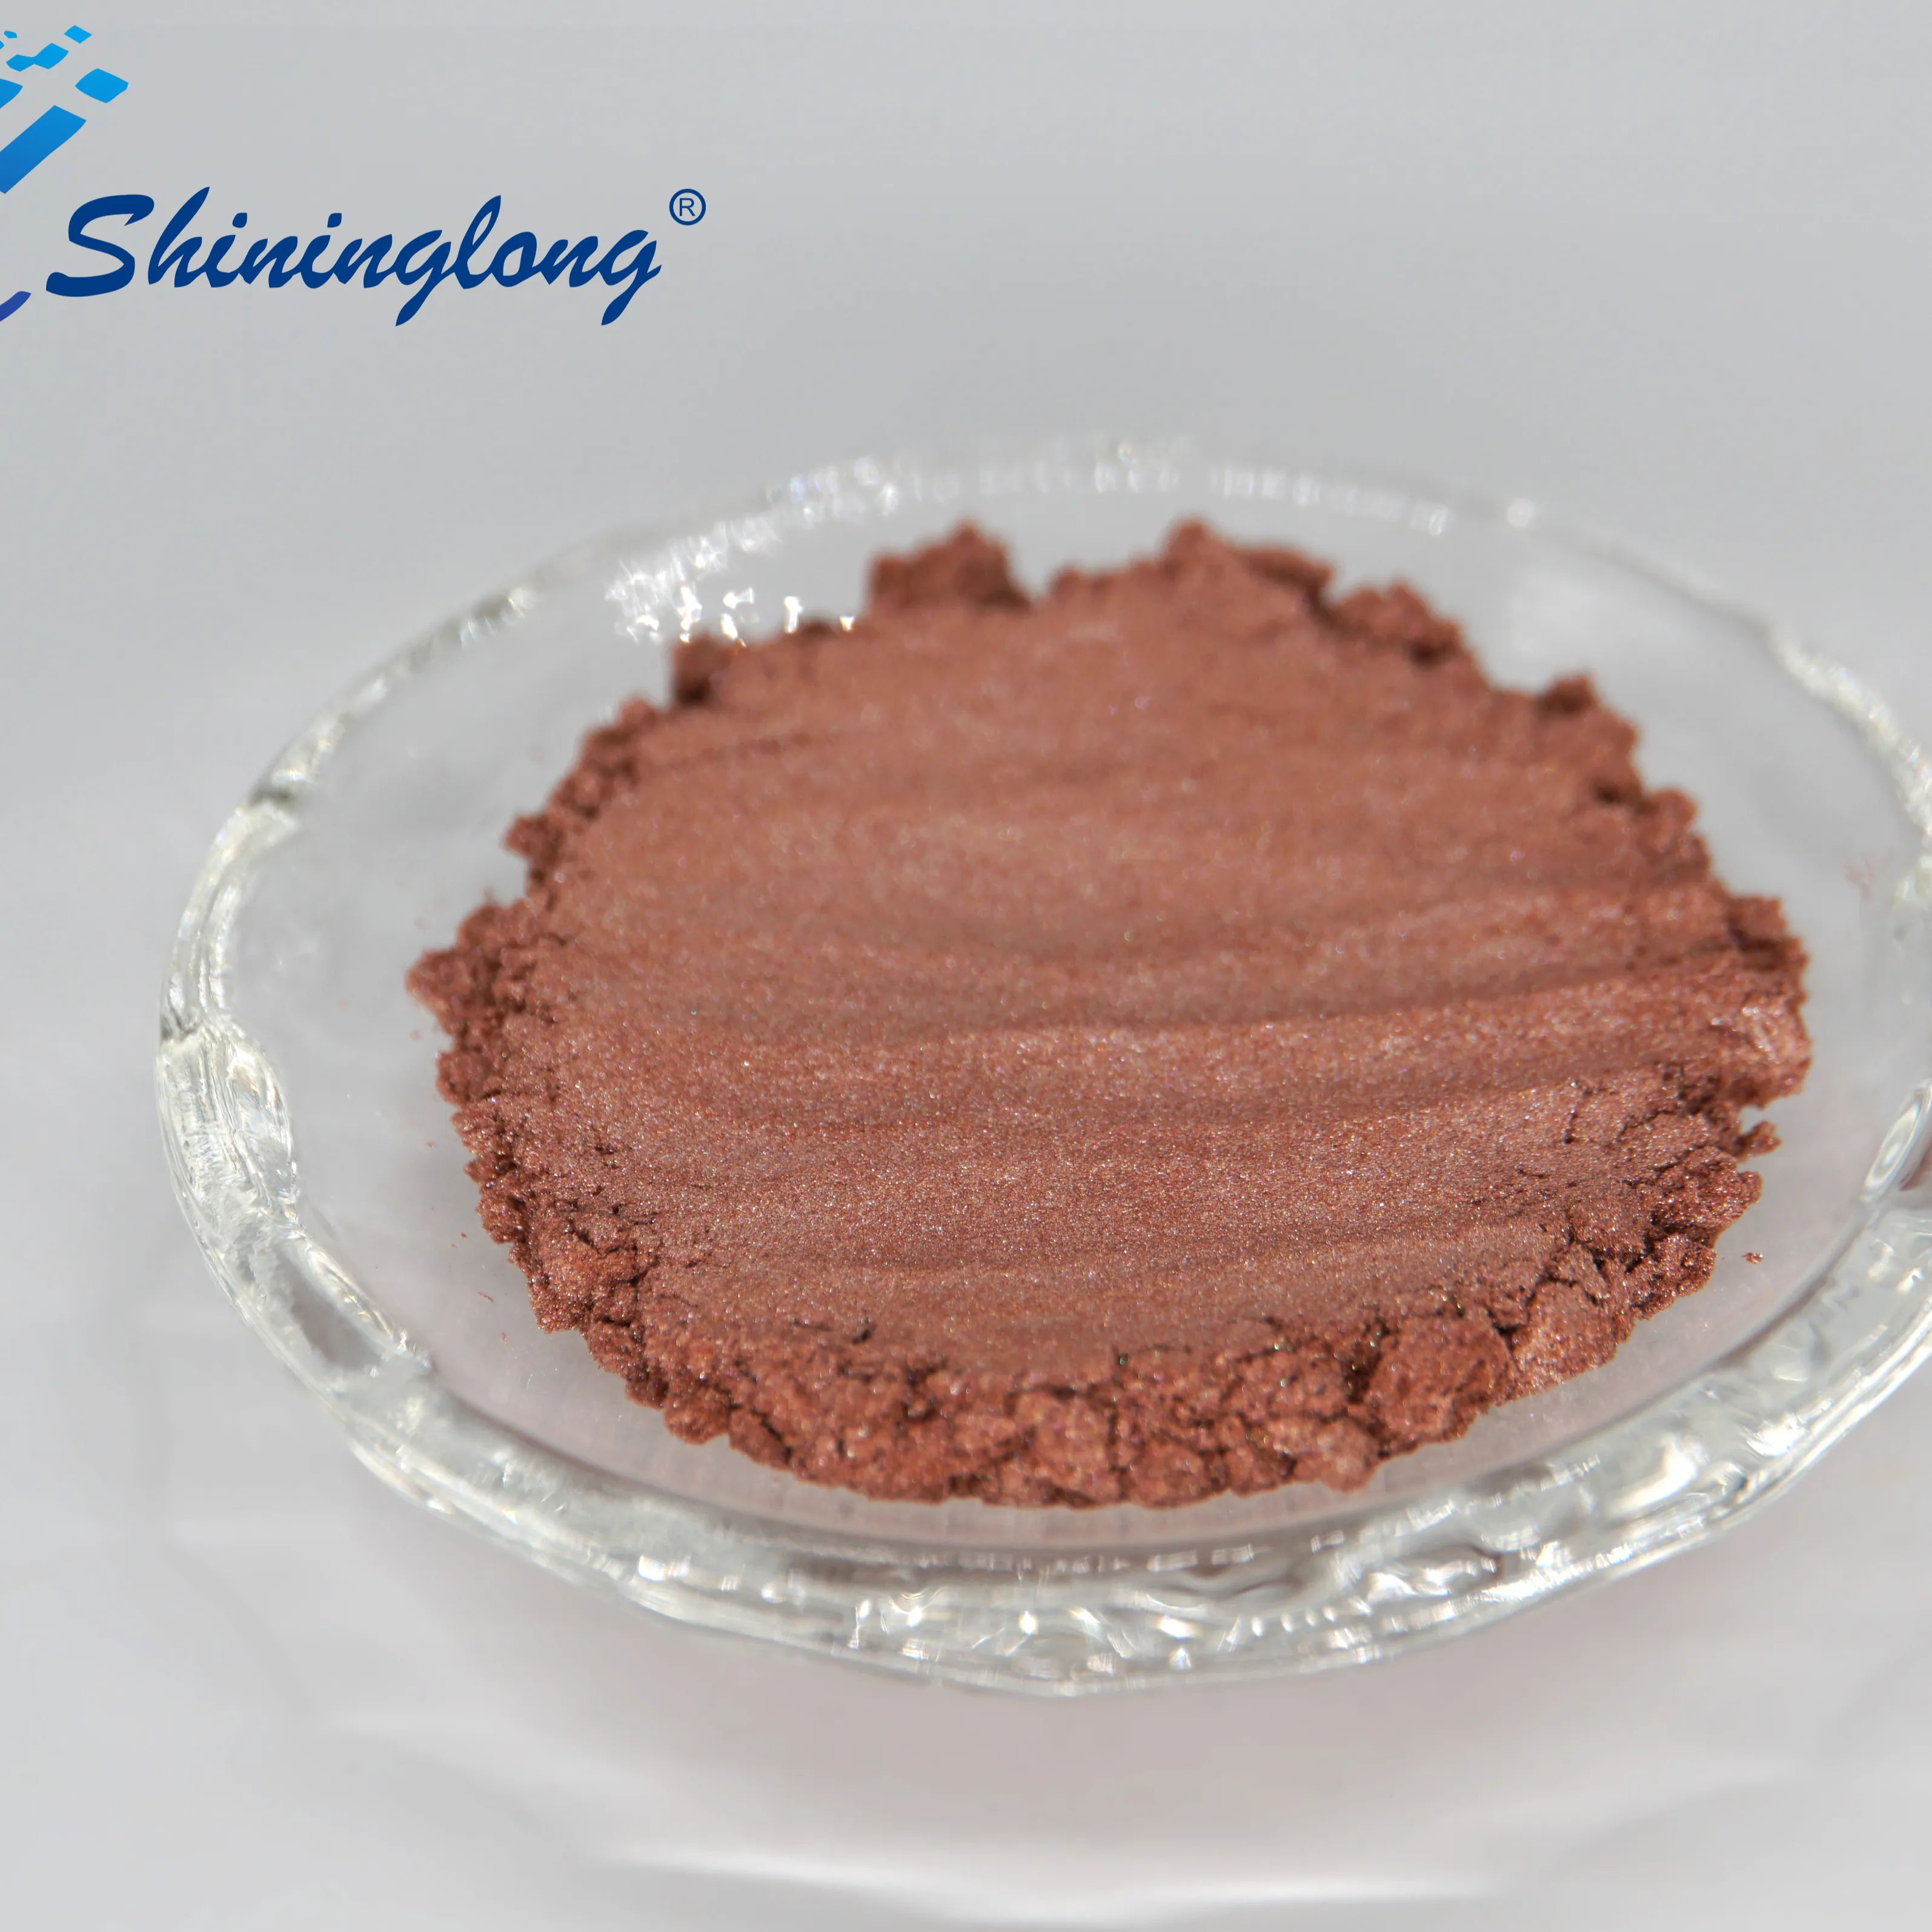 Pigmen logam mutiara pigmen merah muda beku dapat digunakan sebagai highlight atau foundation make-up